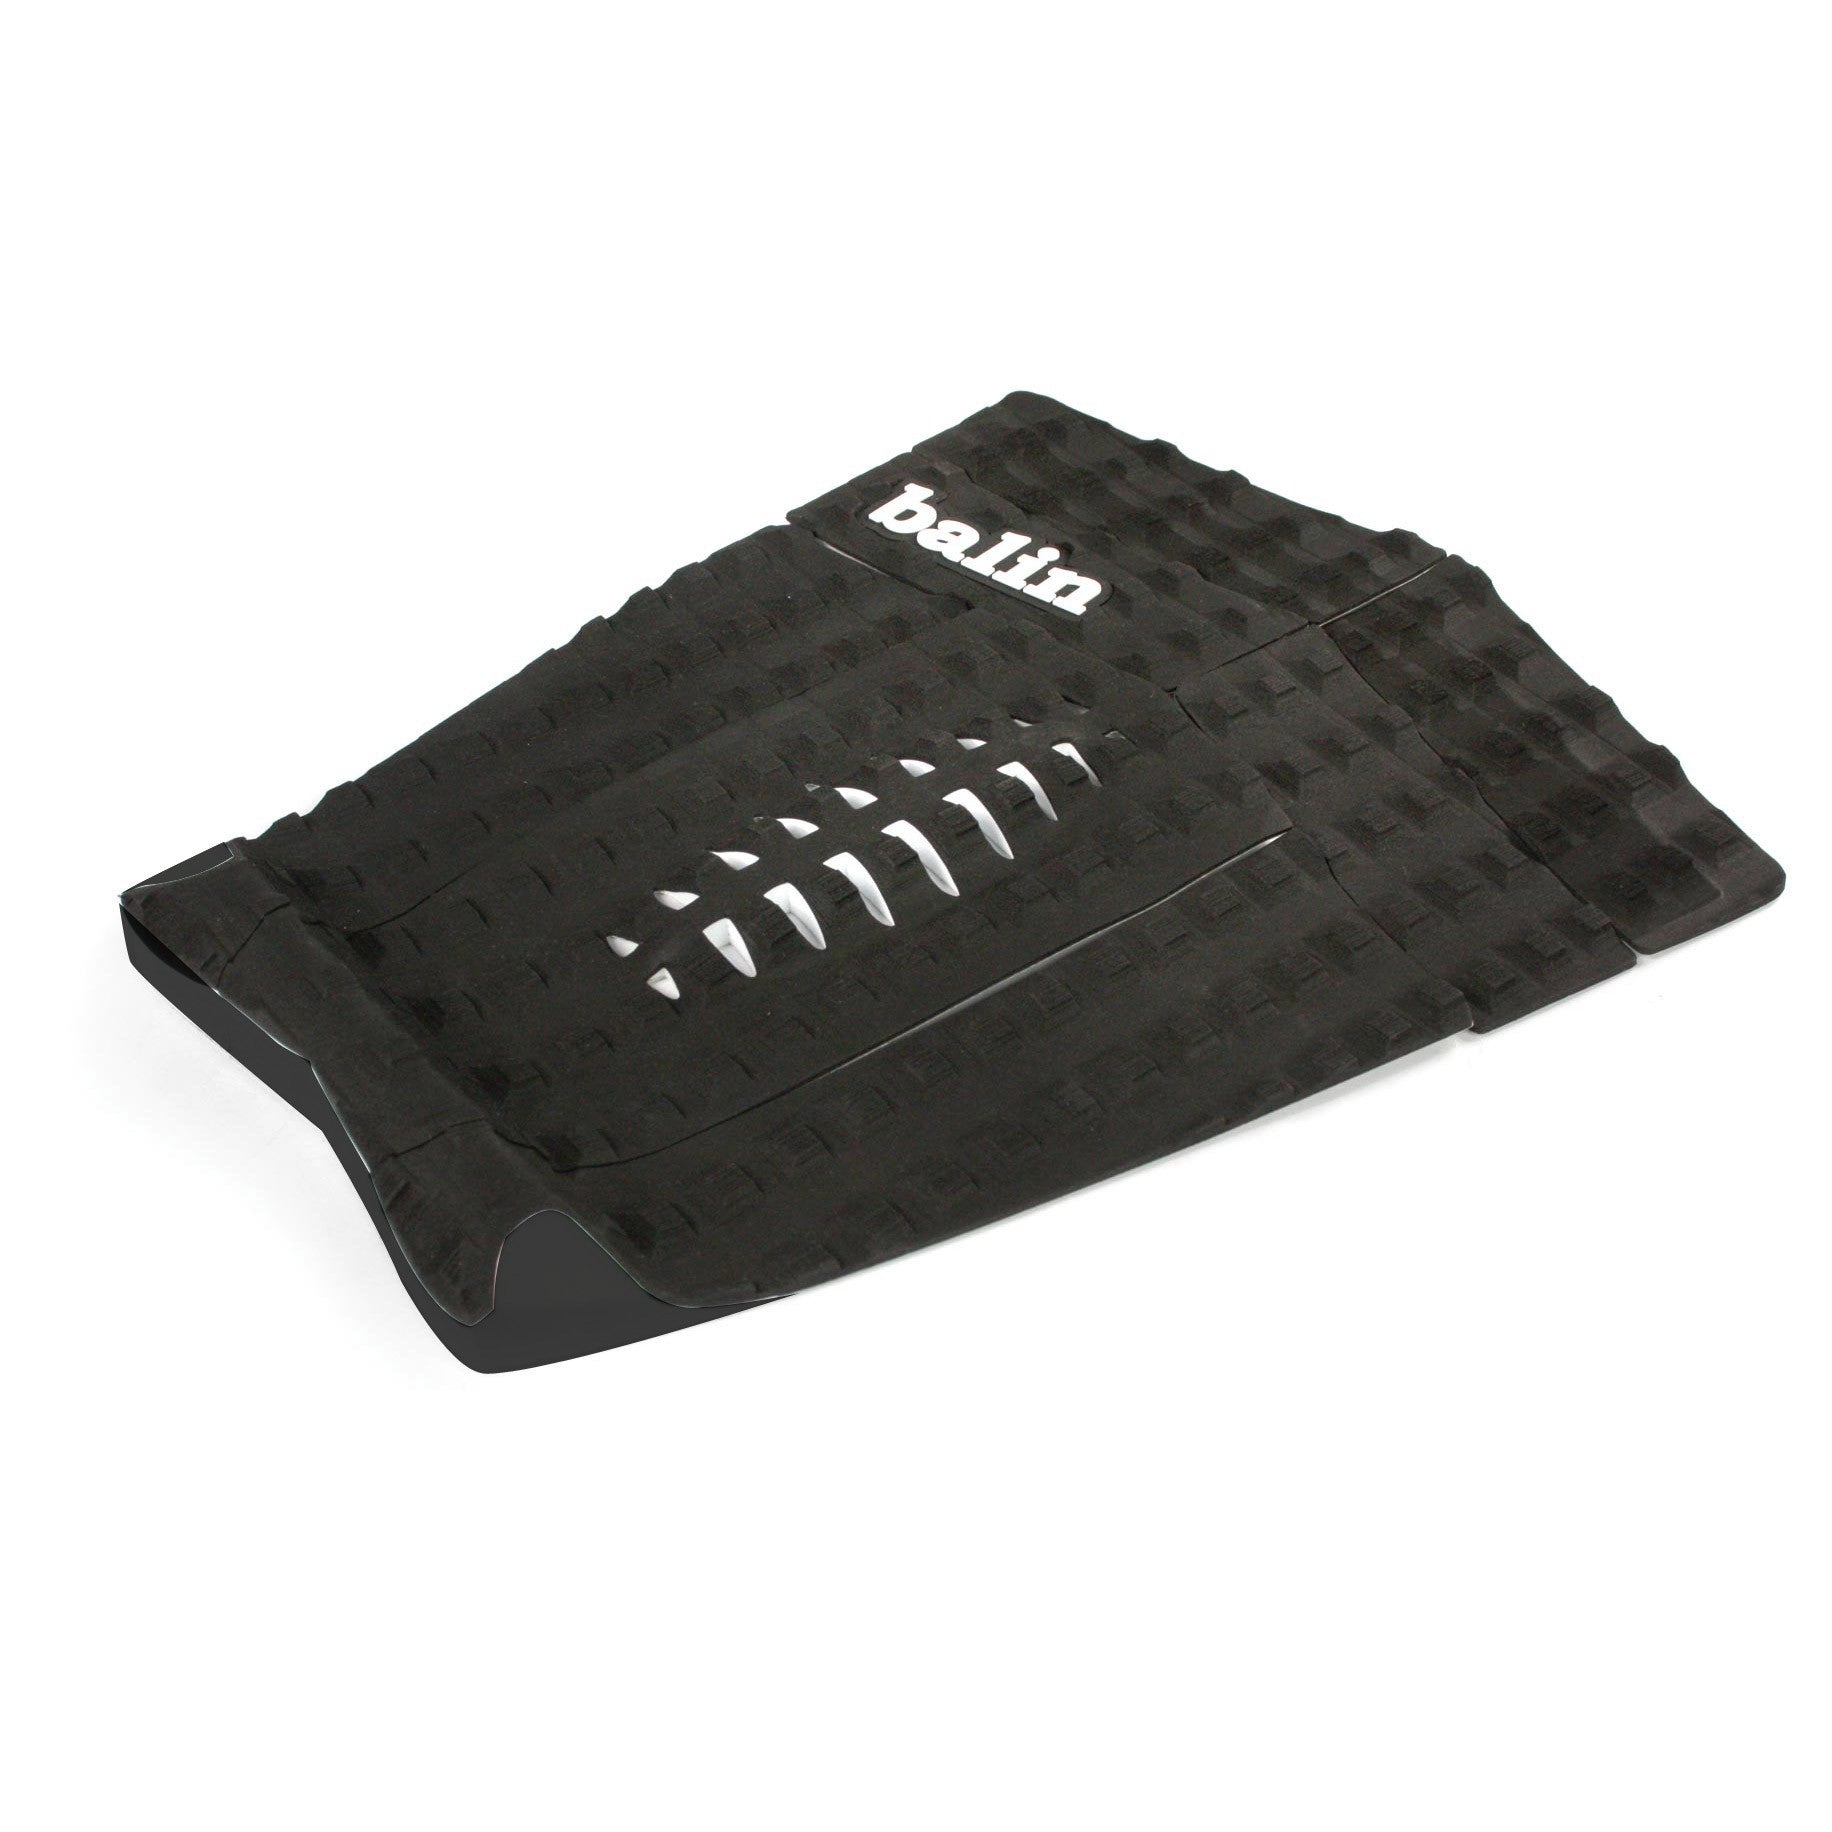 BALIN - Splitter Longboard Traction Pad - Black / Black